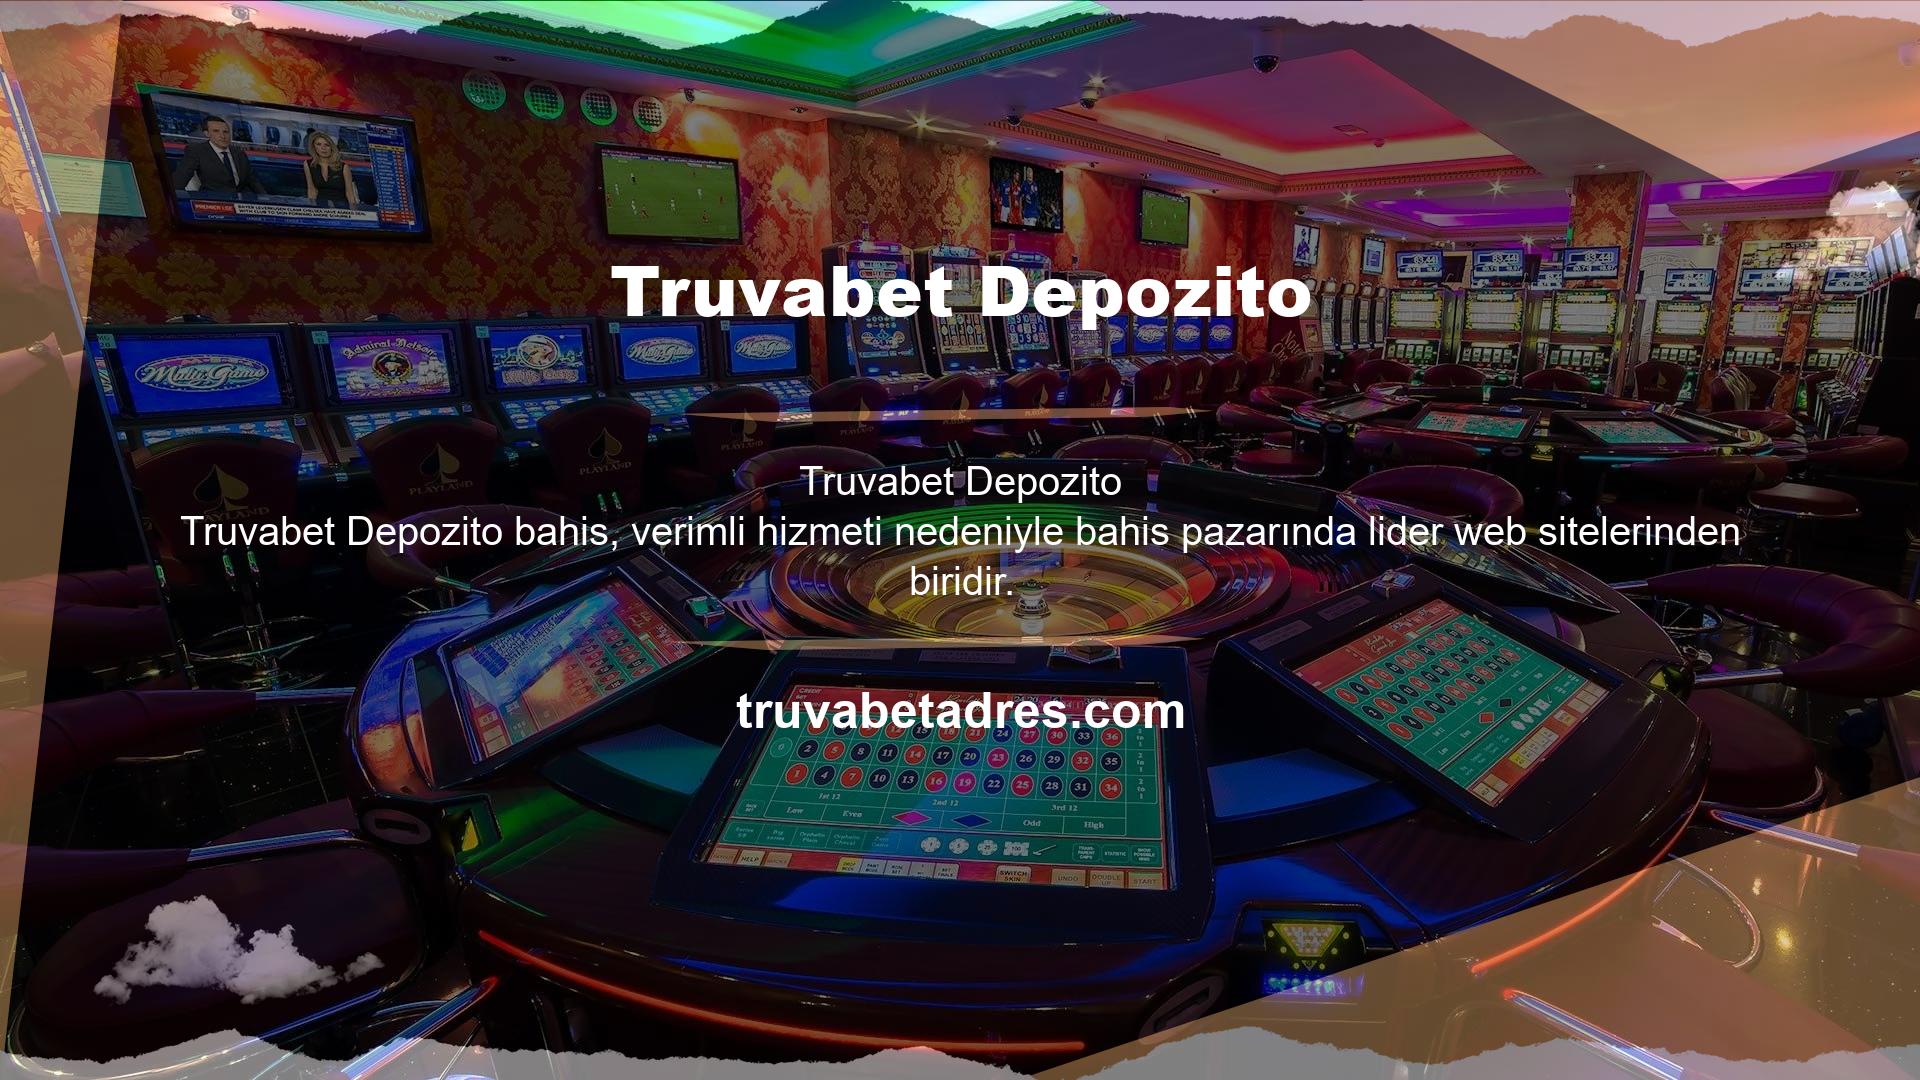 Güvenilir casino siteleri Avrupa pazarını takip ederek oyun türlerini farklılaştırmaktadır